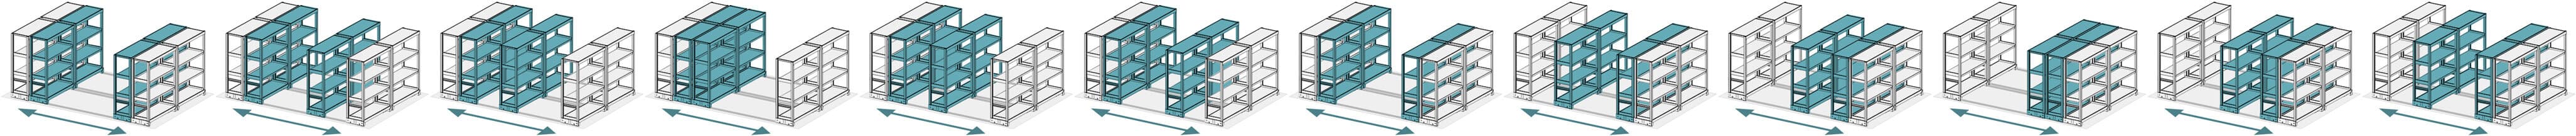 レール式移動棚の2連単式(並列2台同時)移動アニメーション